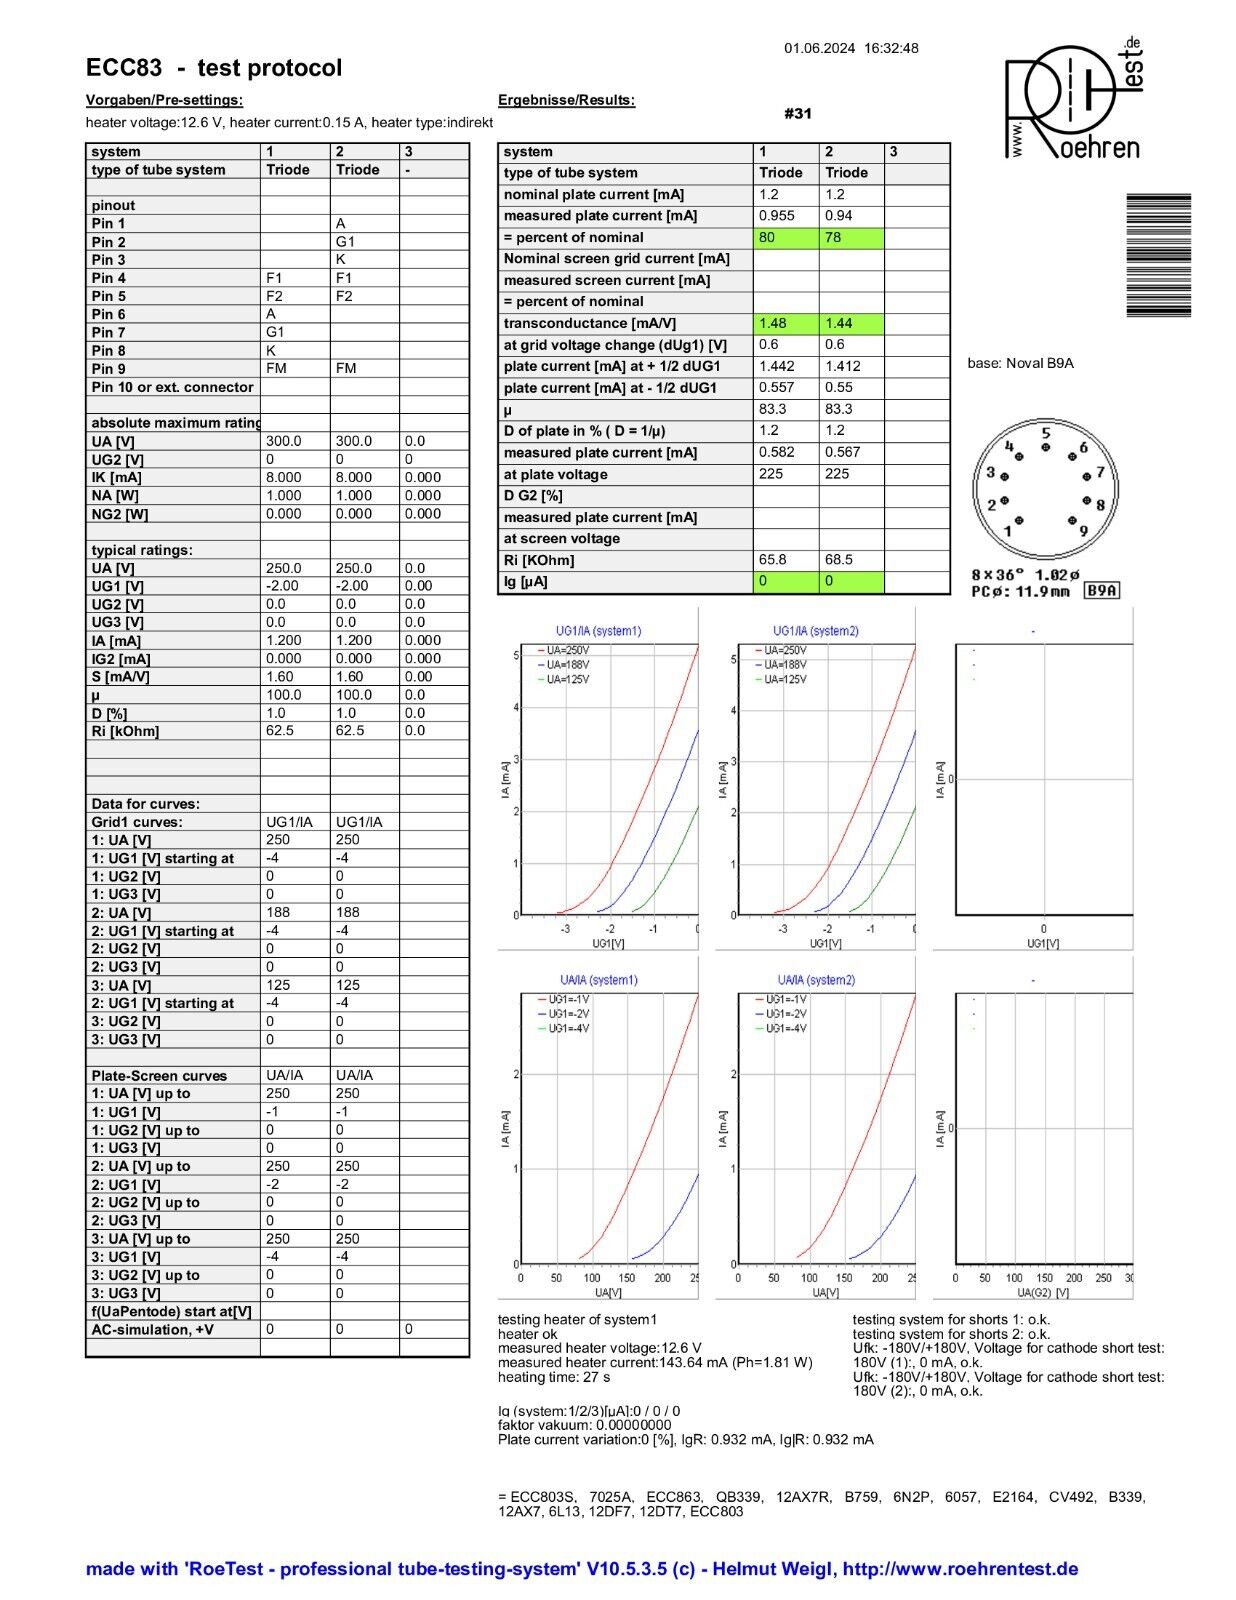 Amperex ECC83 Long Plates Foil D Getter Matched Pair - Holland '57 mC5 ⊿7J